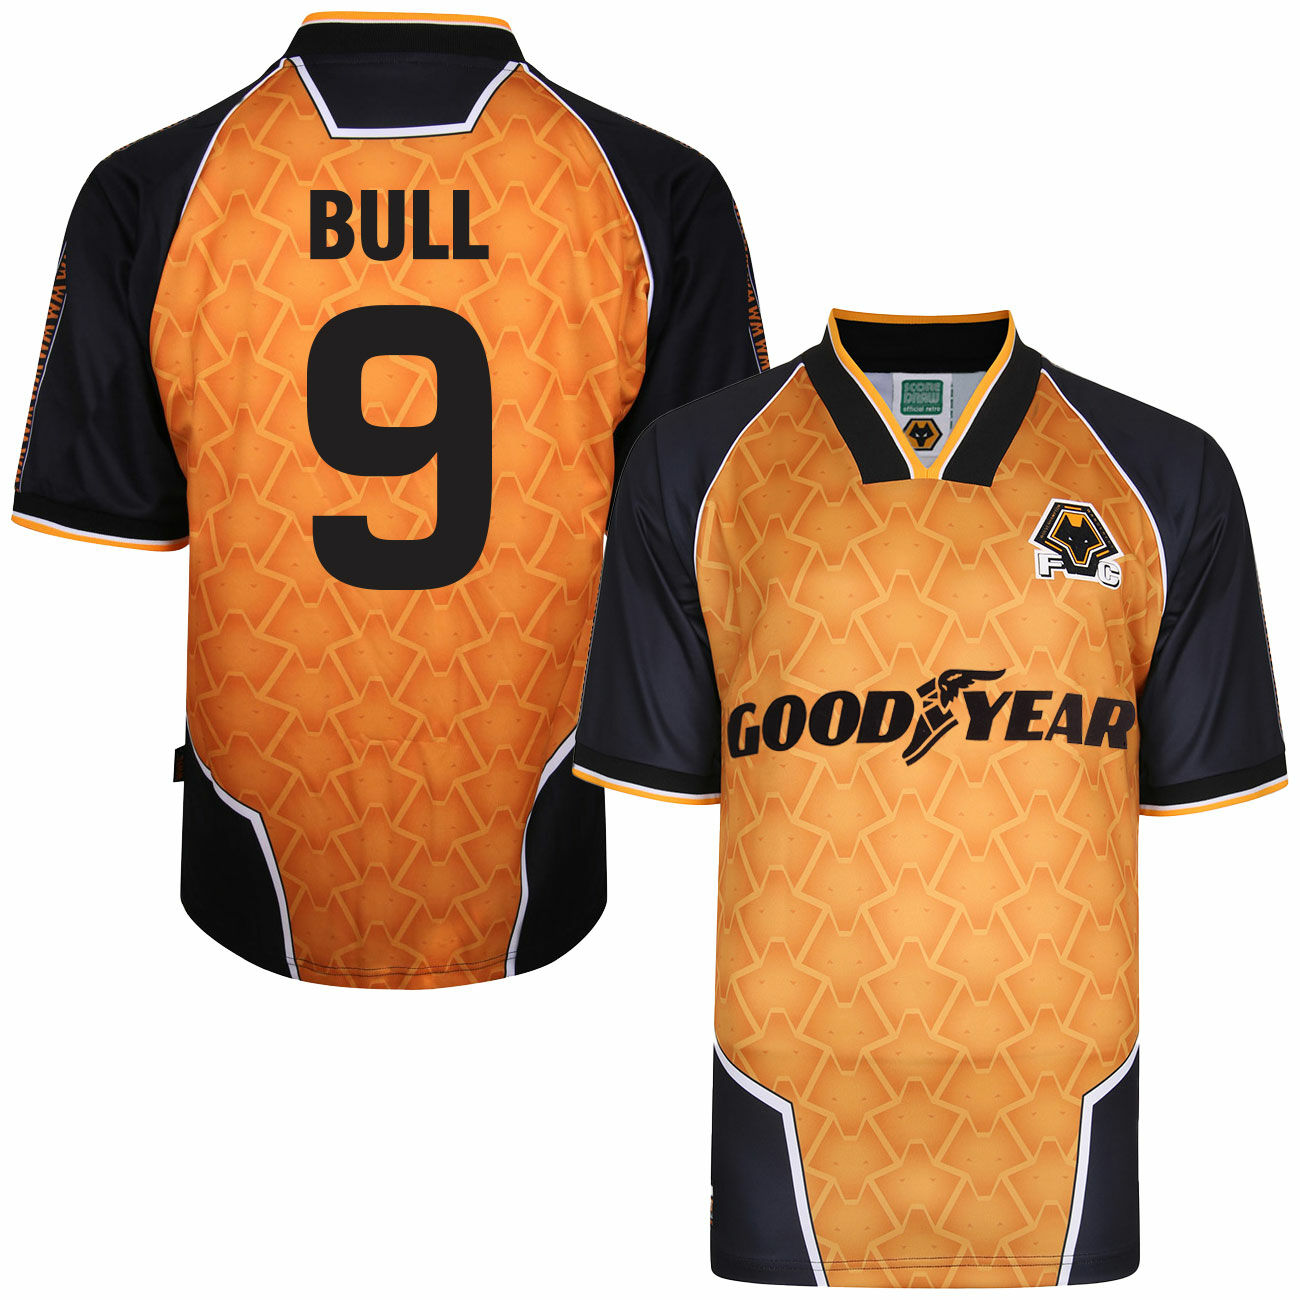 Wolverhampton Wanderers - Dres fotbalový - sezóna 1996/97, Steve Bull, oranžový, retro potisk z plsti, domácí, číslo 9, retrostyl